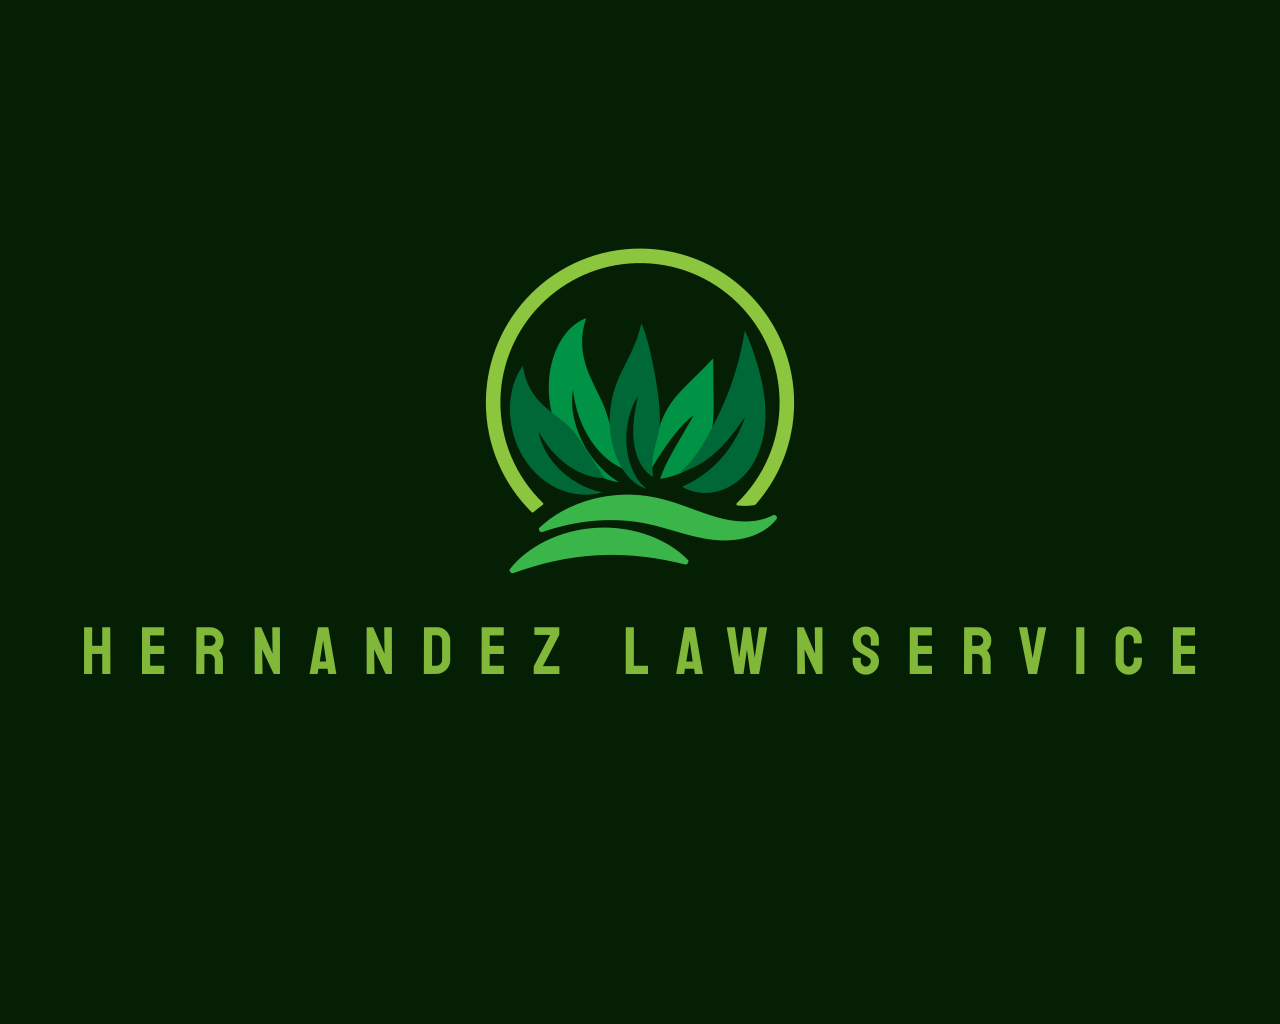 Hernandez LawnService 's logo